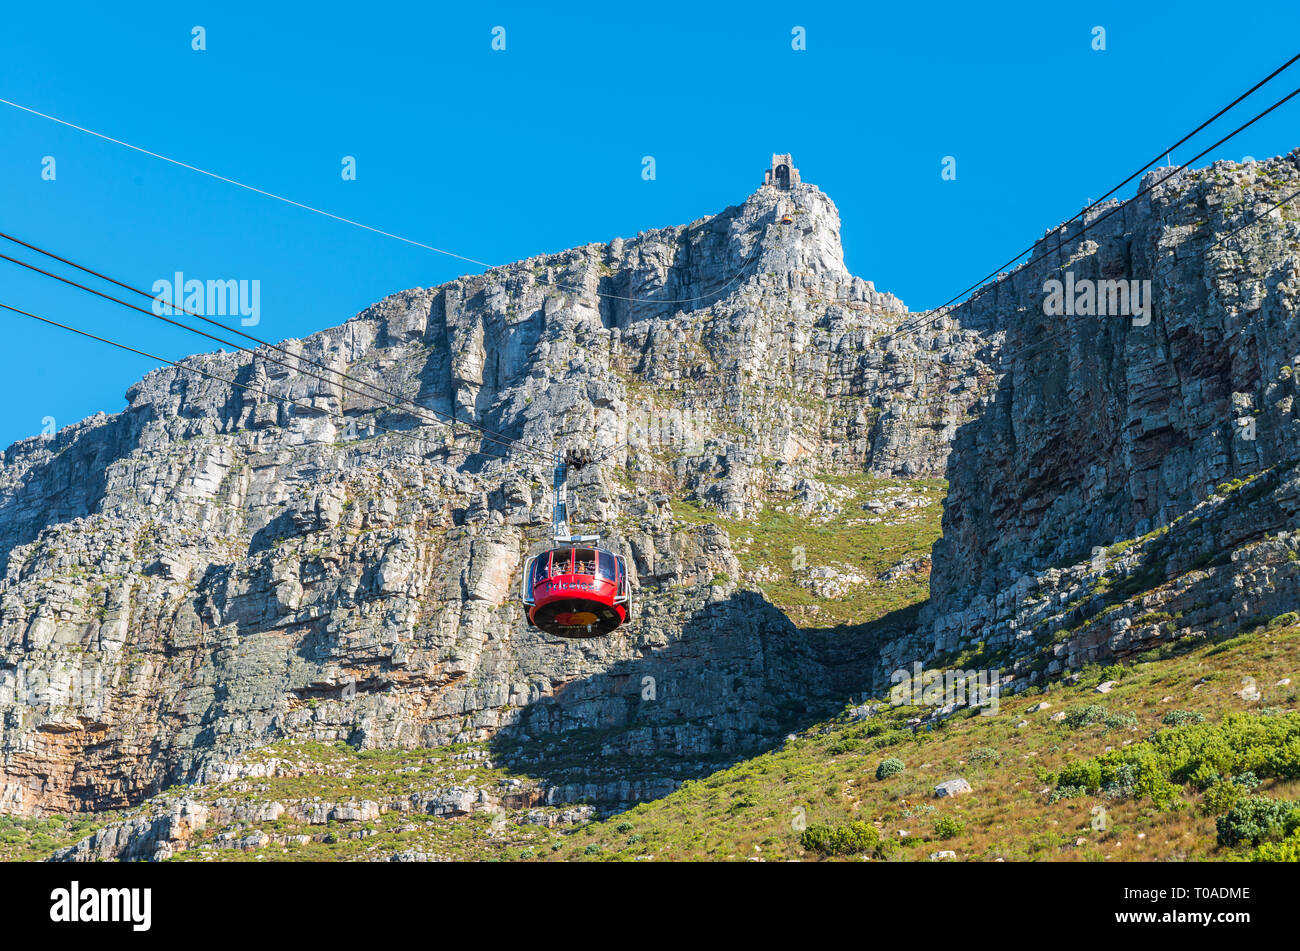 Le célèbre téléphérique menant au parc national de Table Mountain réunissant les touristes jusqu'à la montagne pour des randonnées et des points de vue, Le Cap, Afrique du Sud. Banque D'Images